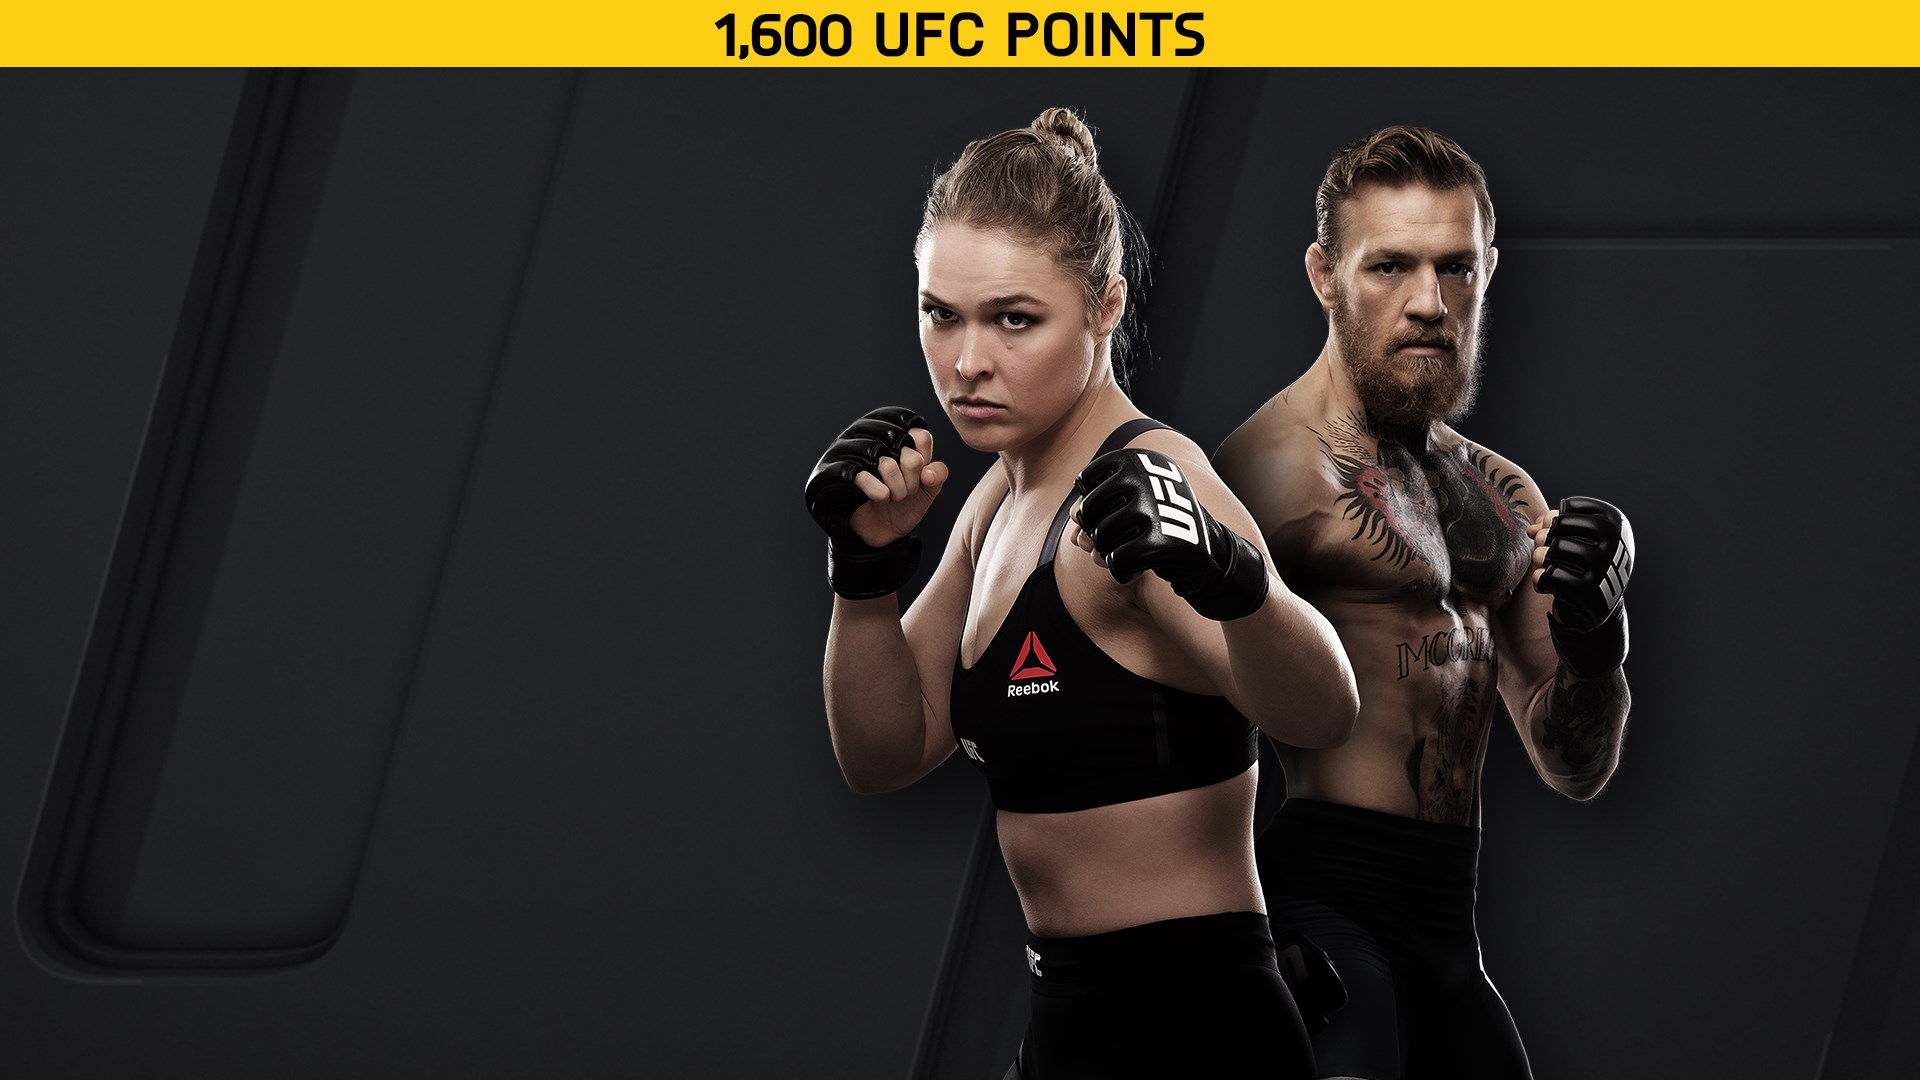 EA SPORTS™ UFC® 2 - 1600 UFC POINTS